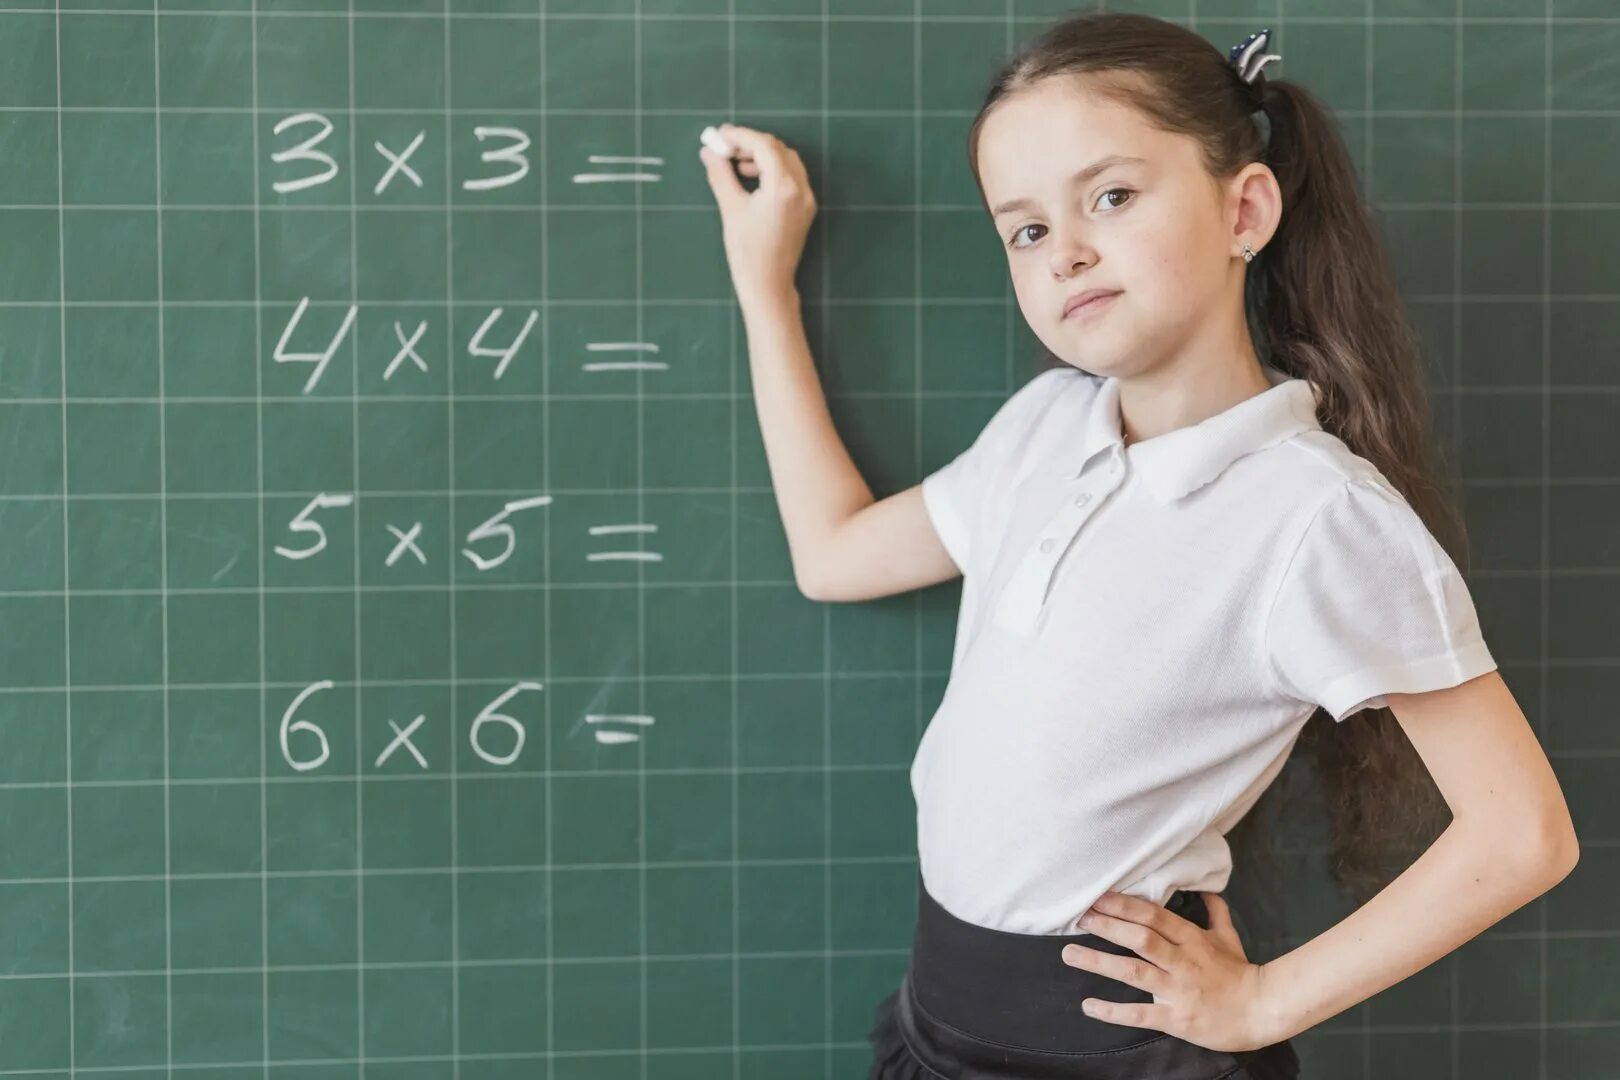 Варианты новых уроков. Ребенок учит математику. Таблица умножения для детей. Урок математики в школе. Математика для школьников.